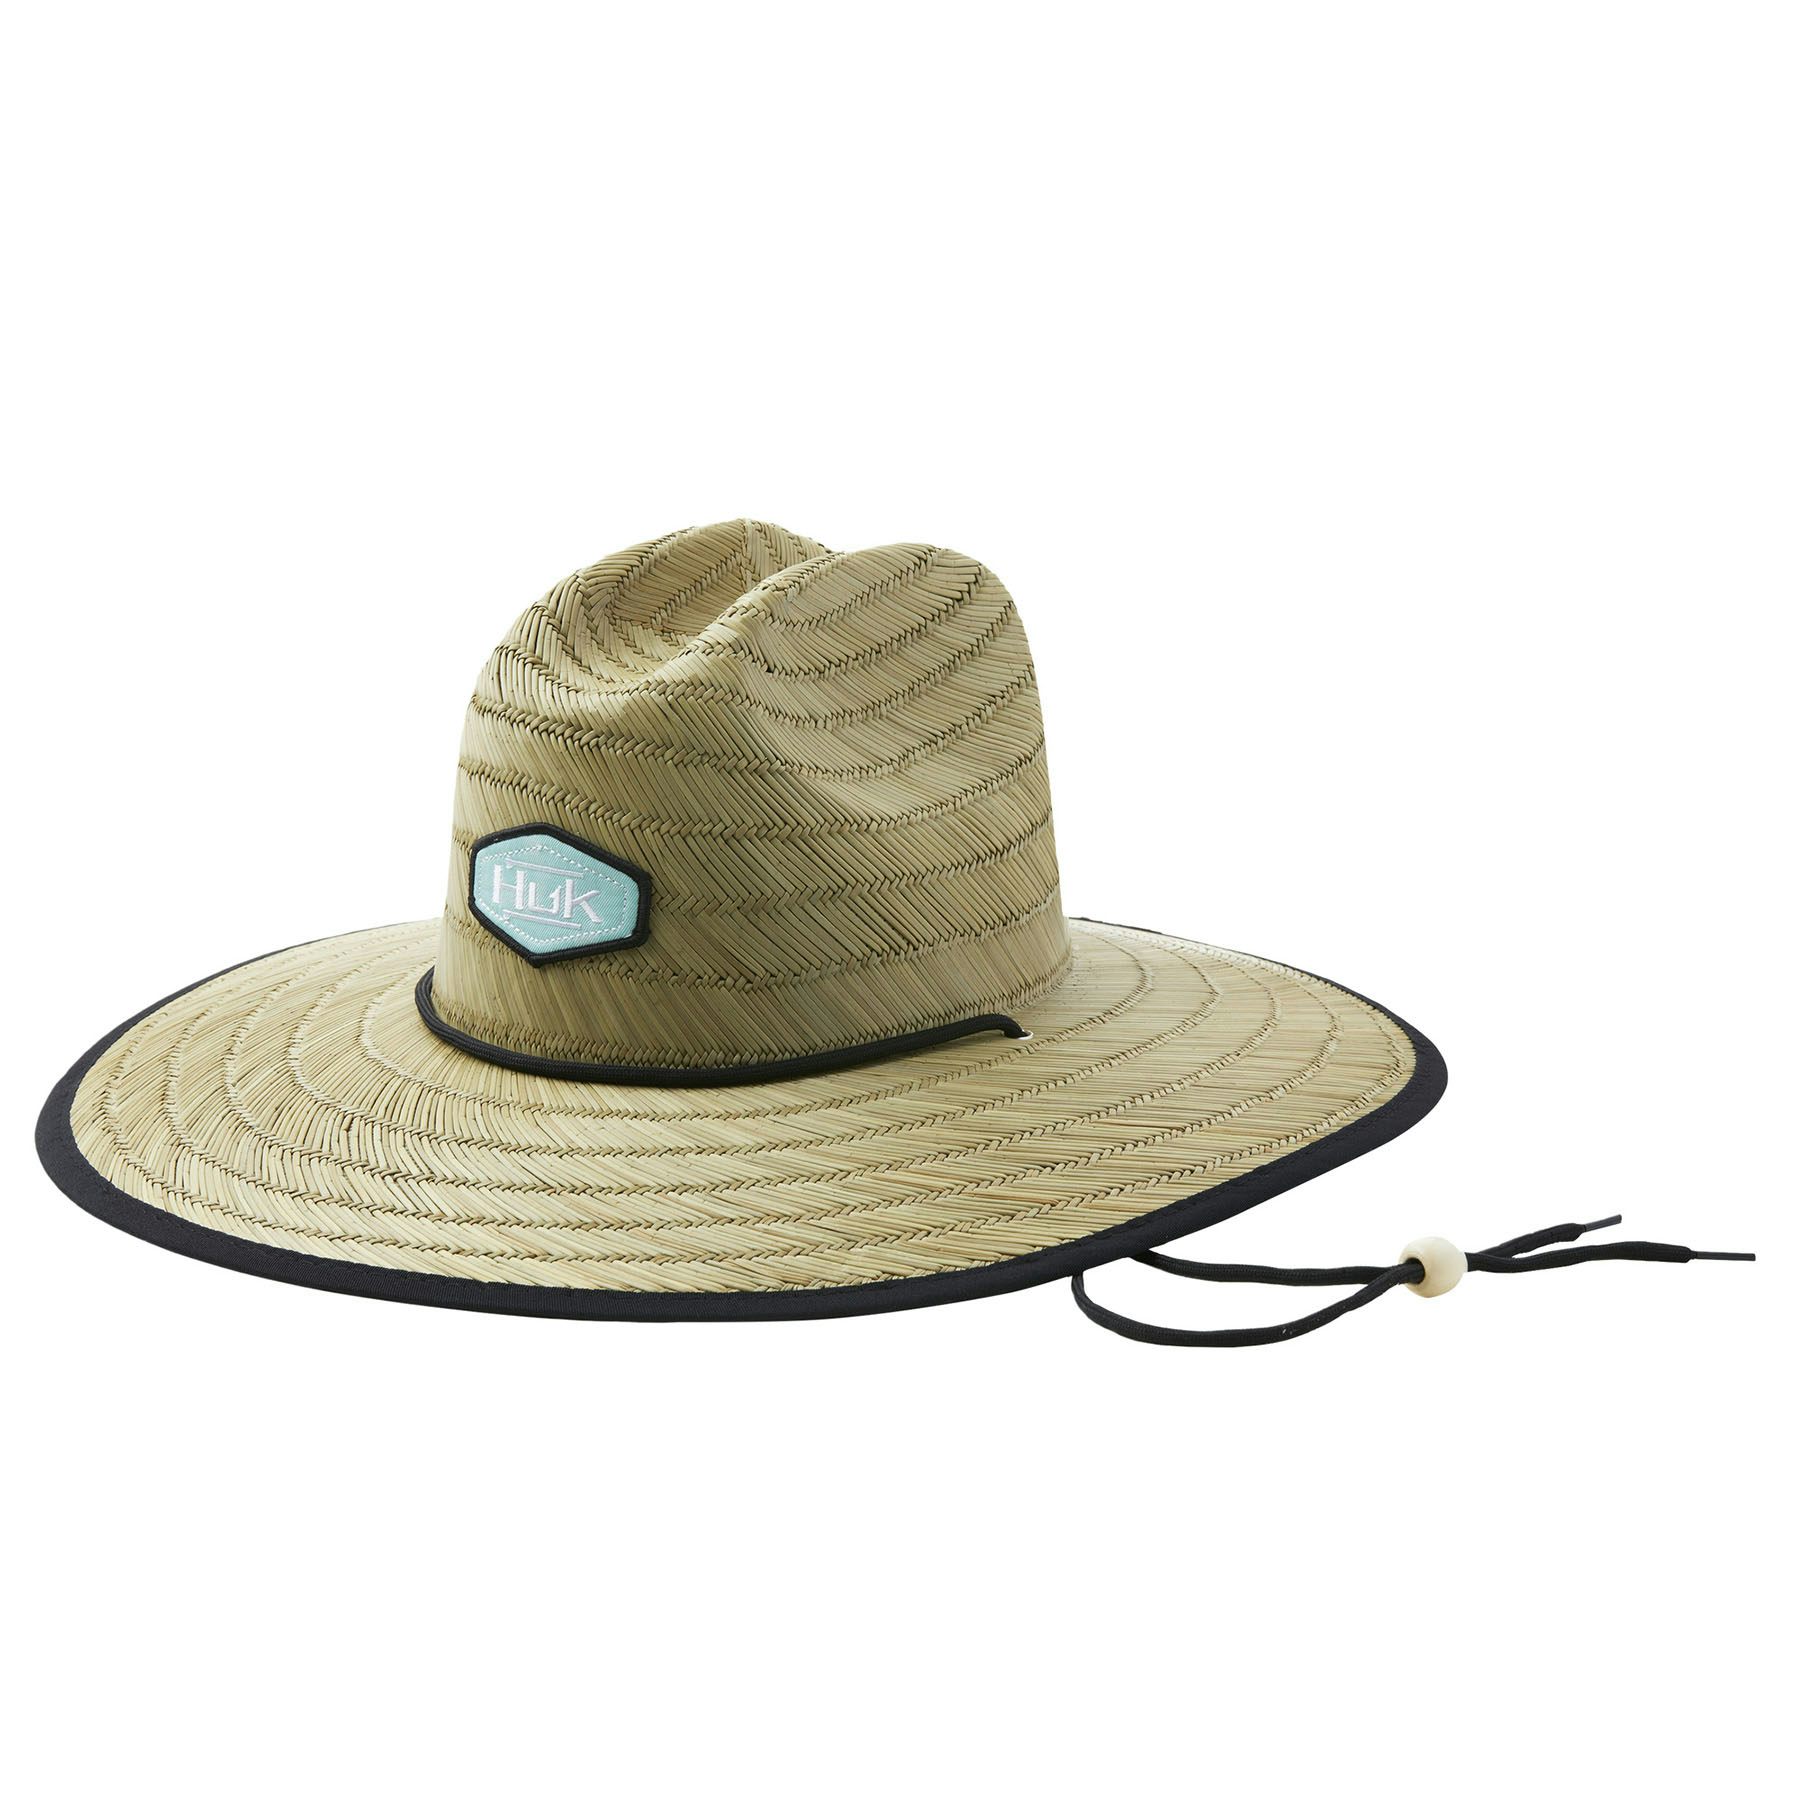 Huk Running Lakes Straw Hat (Women's)